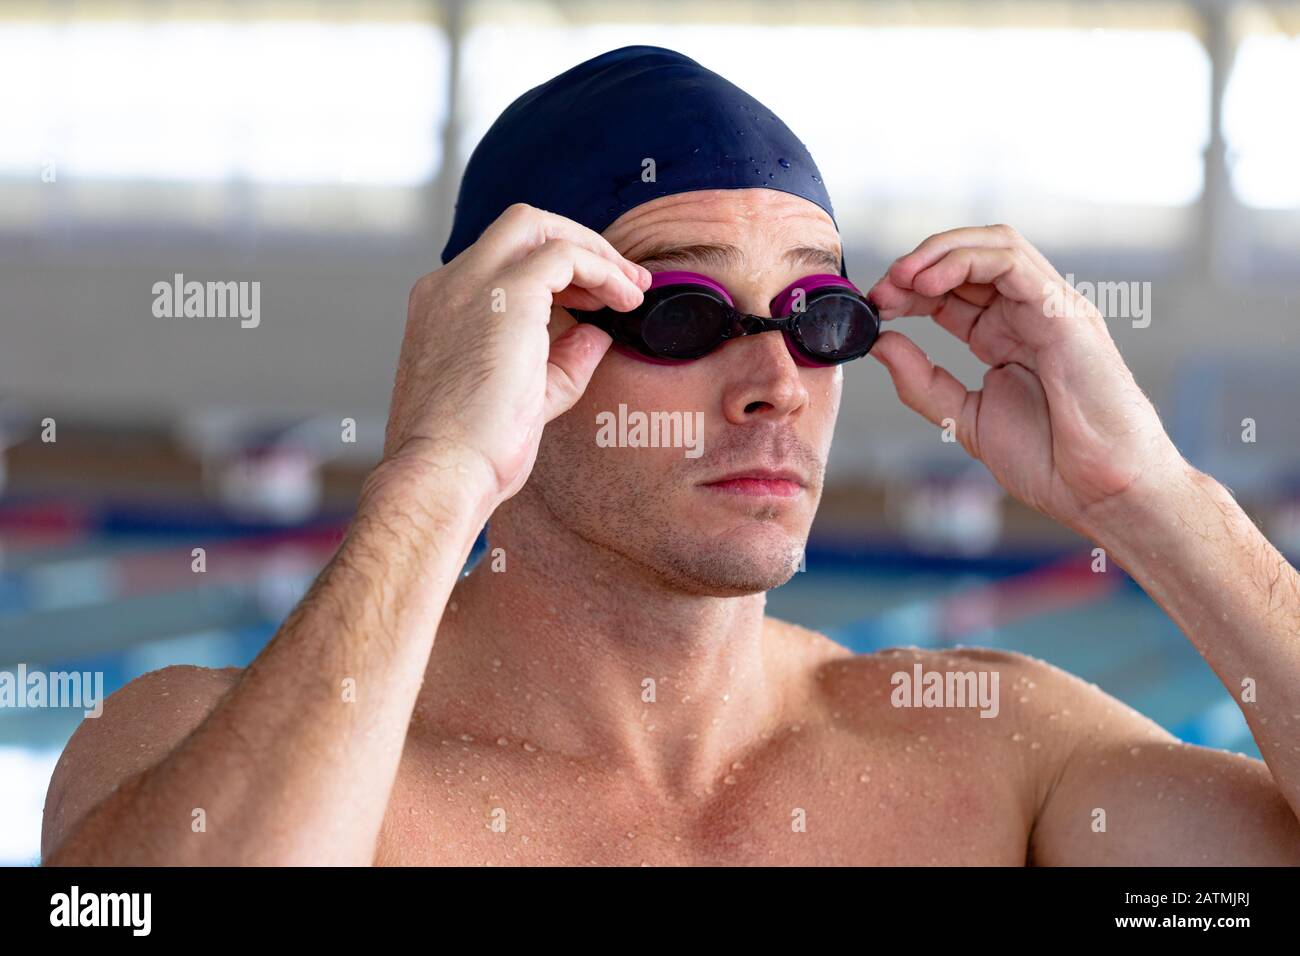 Nuotatore che si prepara a nuotare Foto Stock